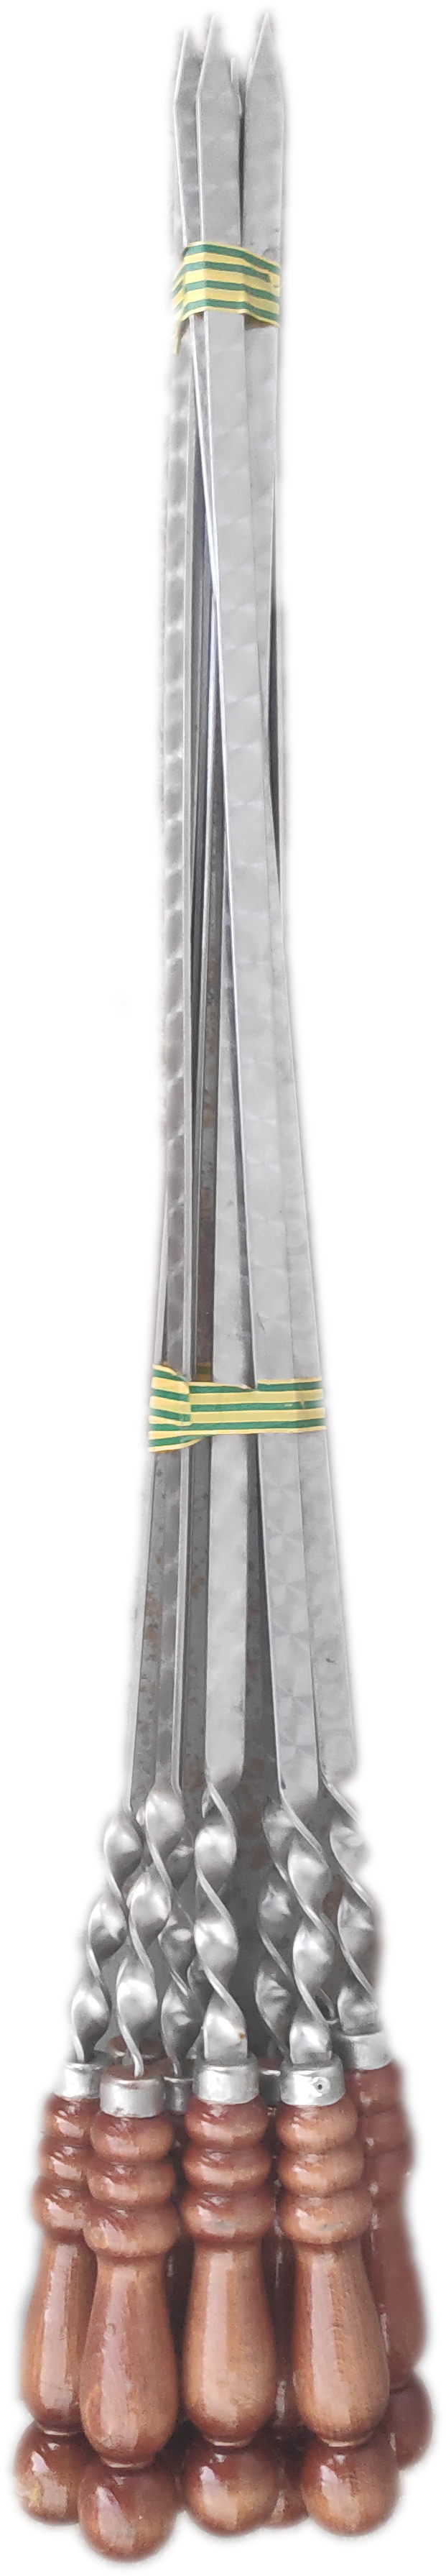 Шампур нержавейка с деревянной ручкой 45 см. (10)